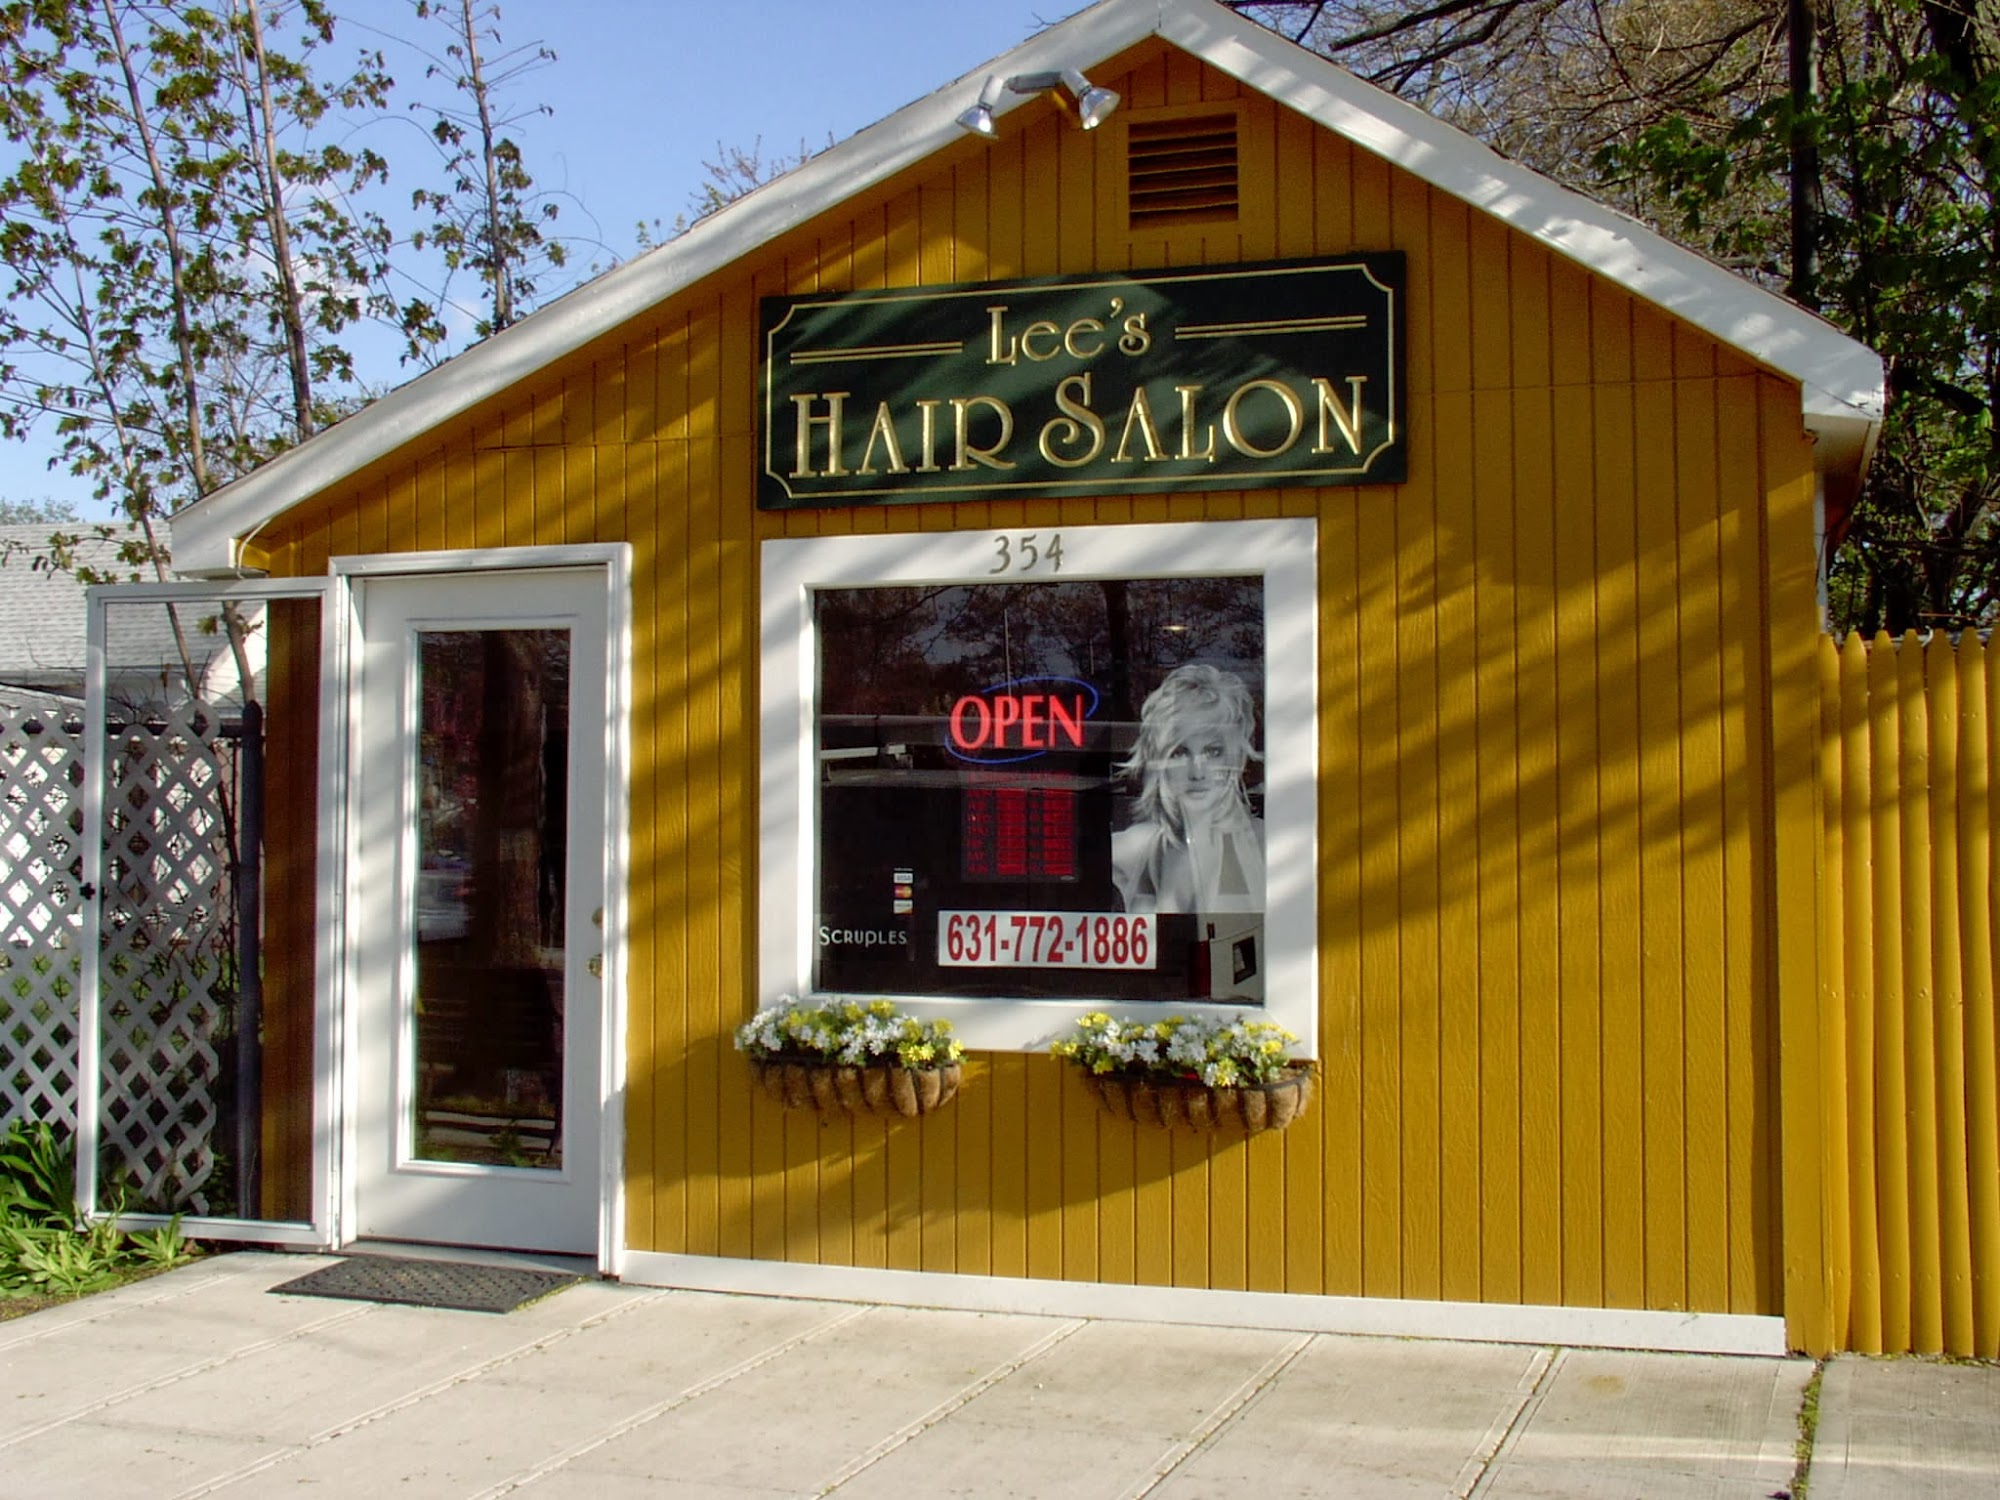 Lee's Hair Salon 354 Neighborhood Rd, Mastic Beach New York 11951